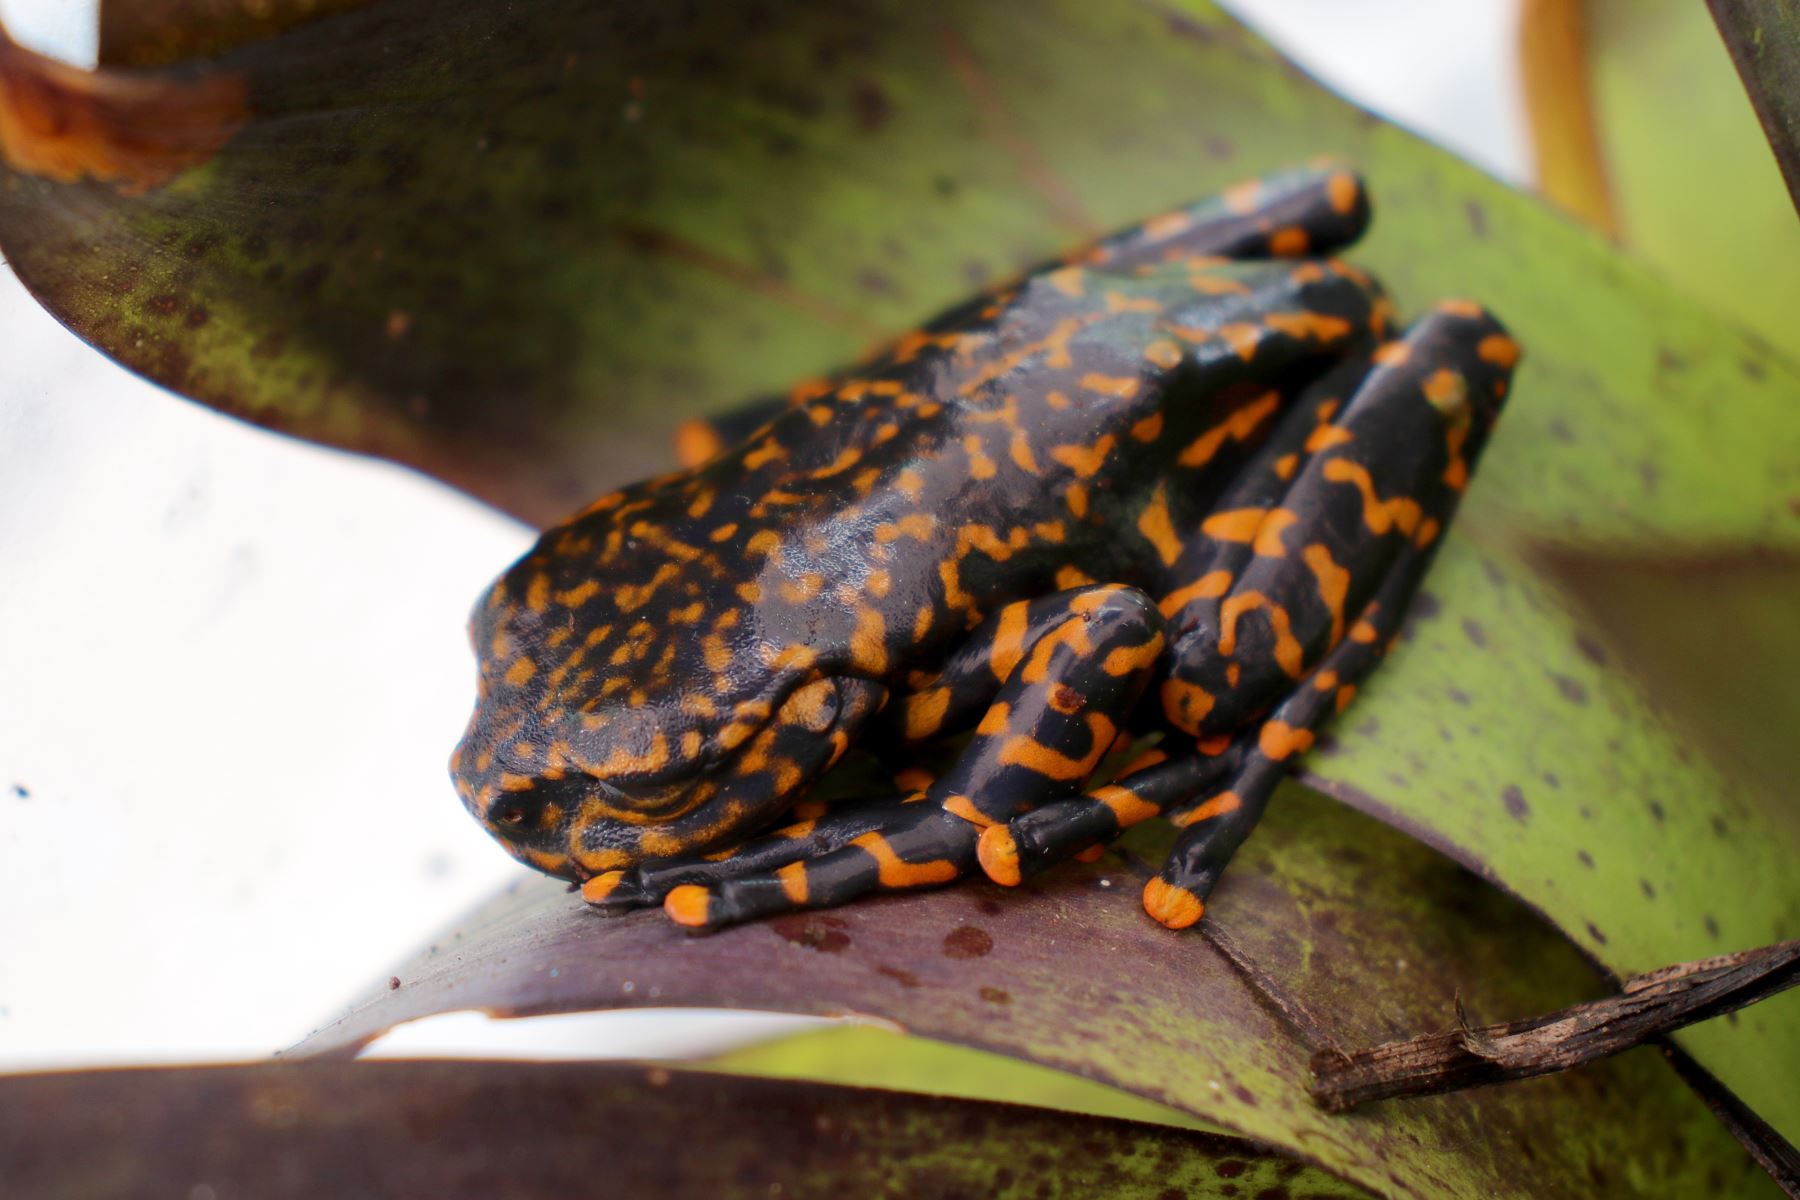 Presentan una nueva especie de rana que habita en bosques húmedos de Ecuador